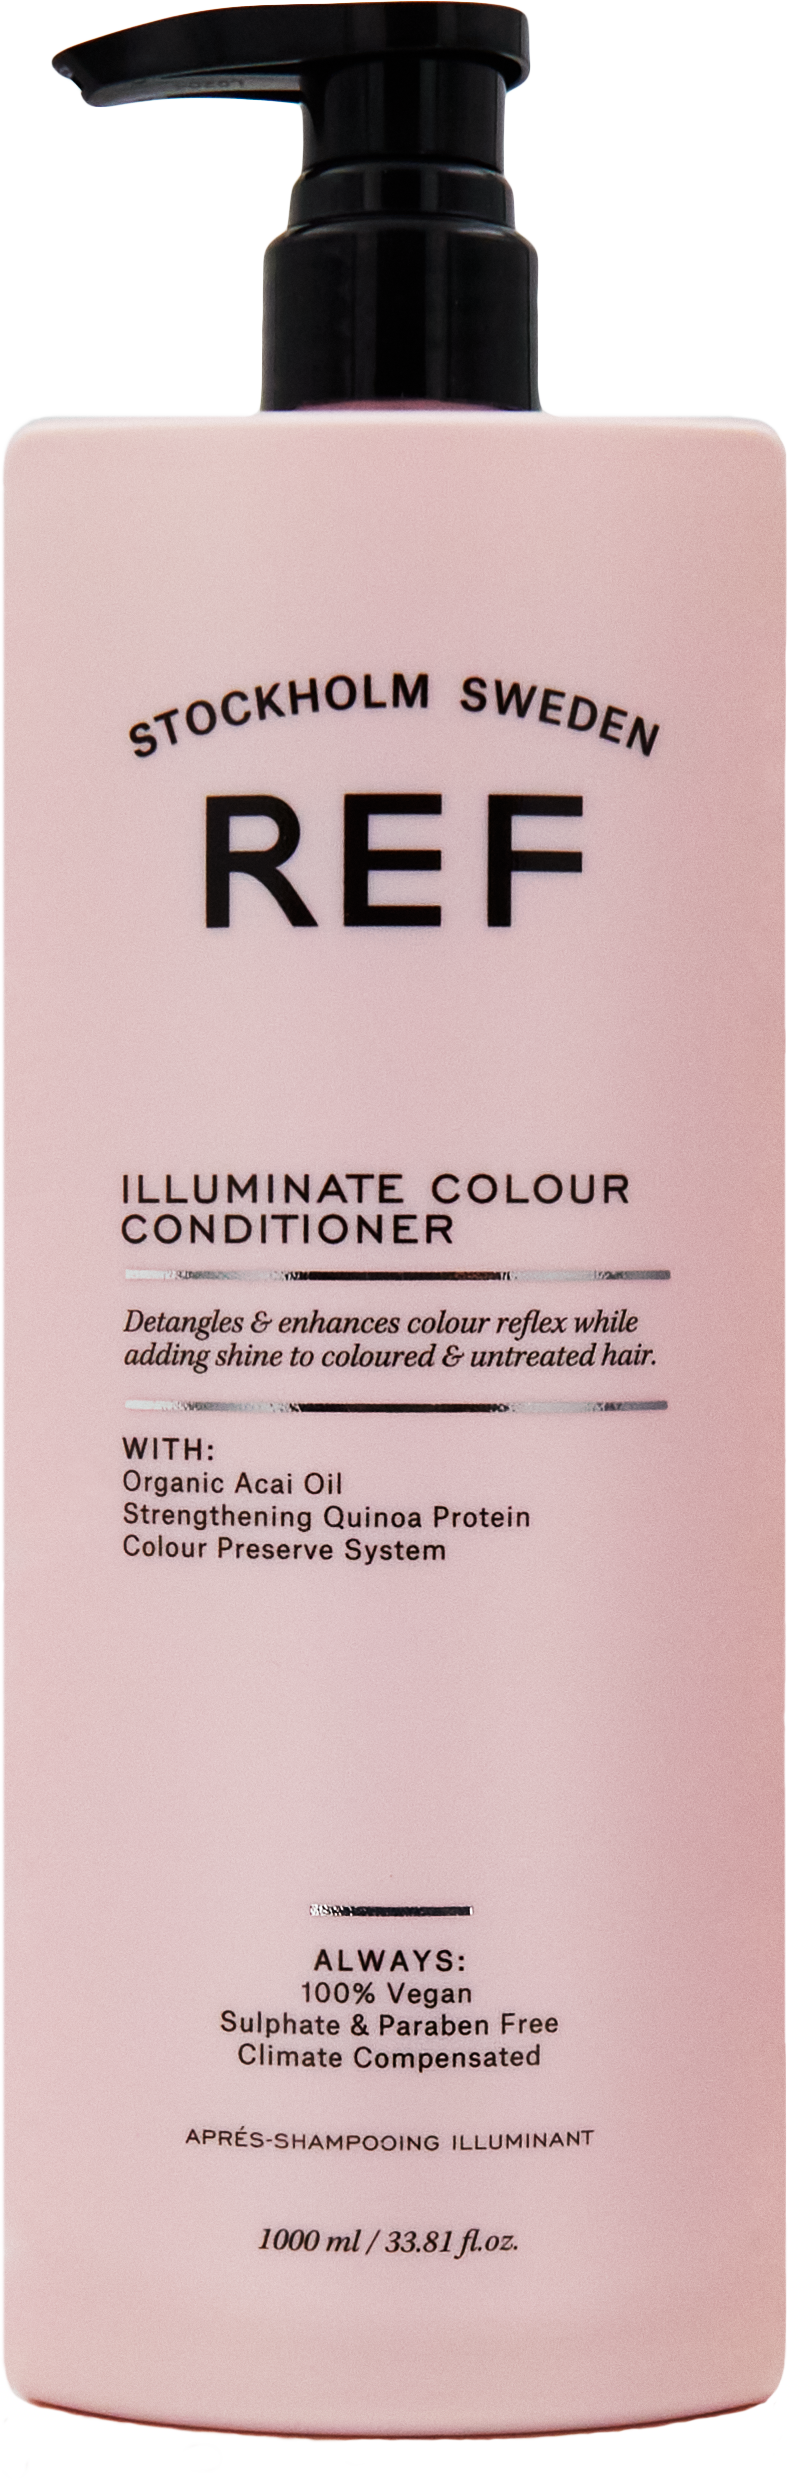 REF Illuminate Colour Conditioner